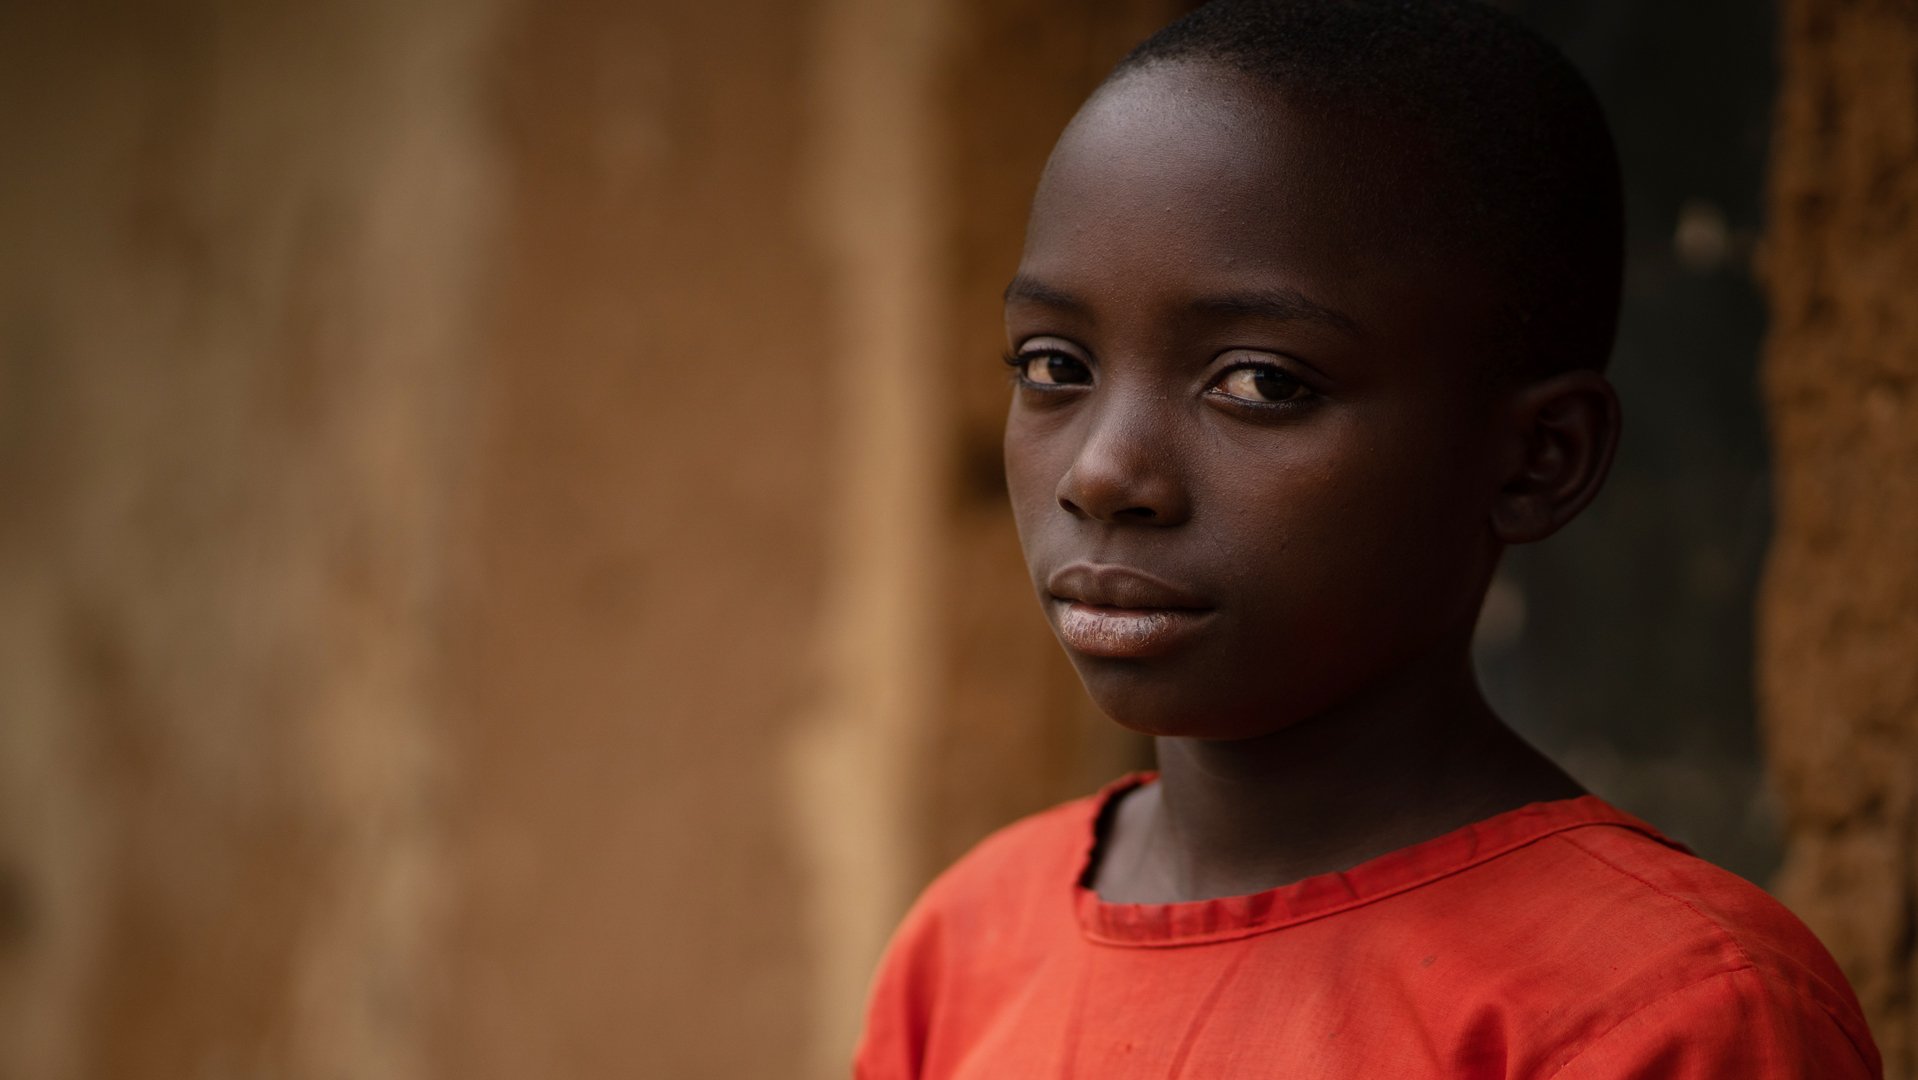 Meisje Ariane in Oeganda - kijkt camera in, draagt rode jurk - War Child Doorbreek het zwijgen